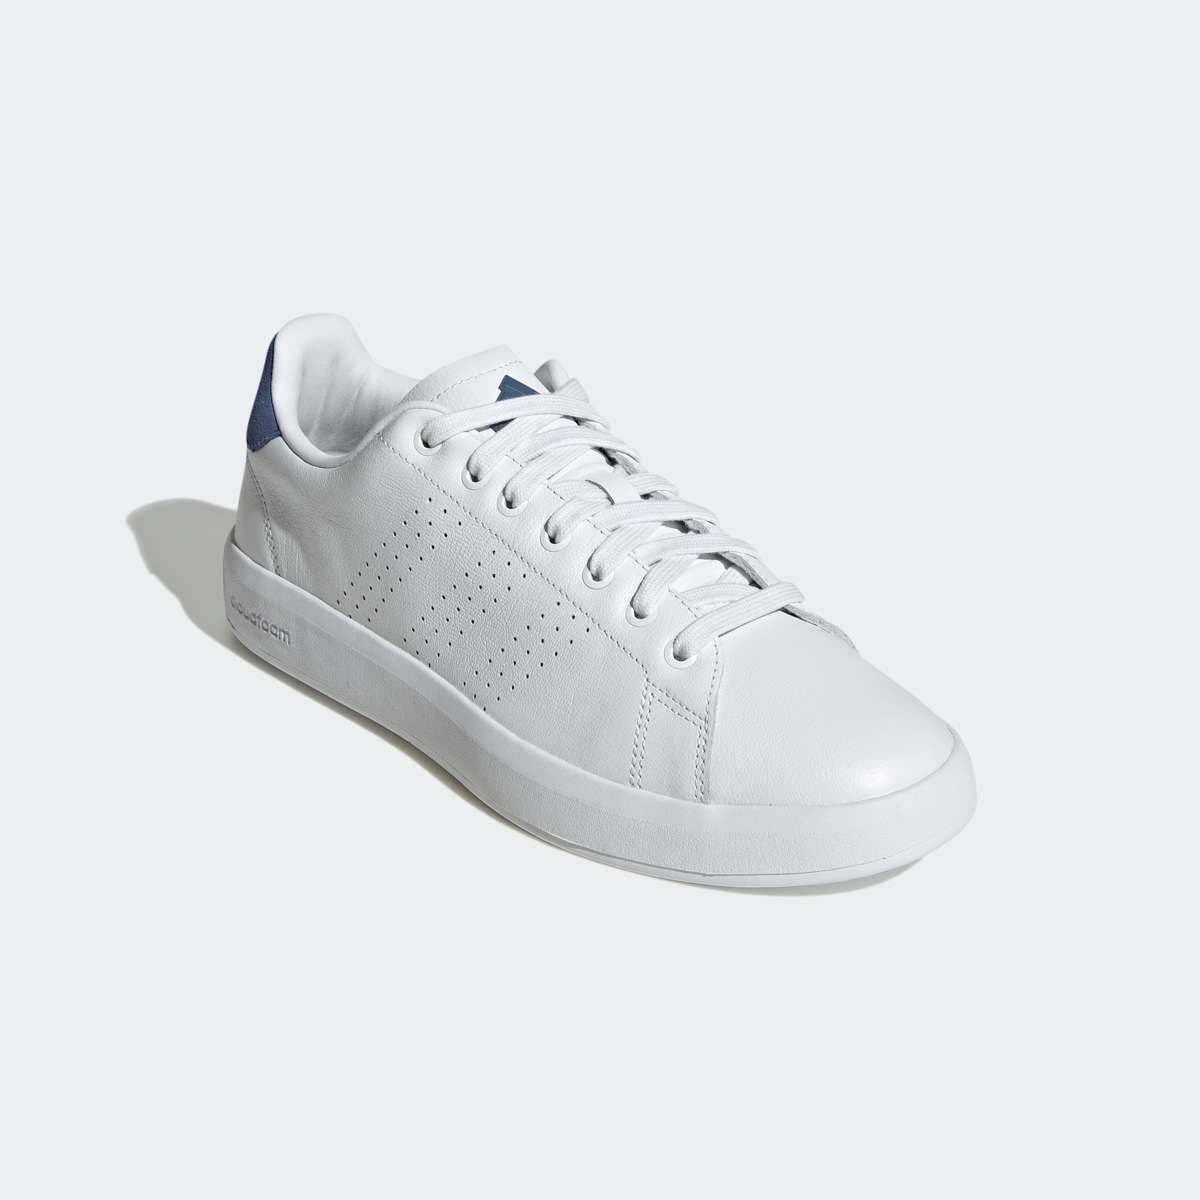 Теннисные кроссовки, дизайн по стопам Adidas Stan Smith